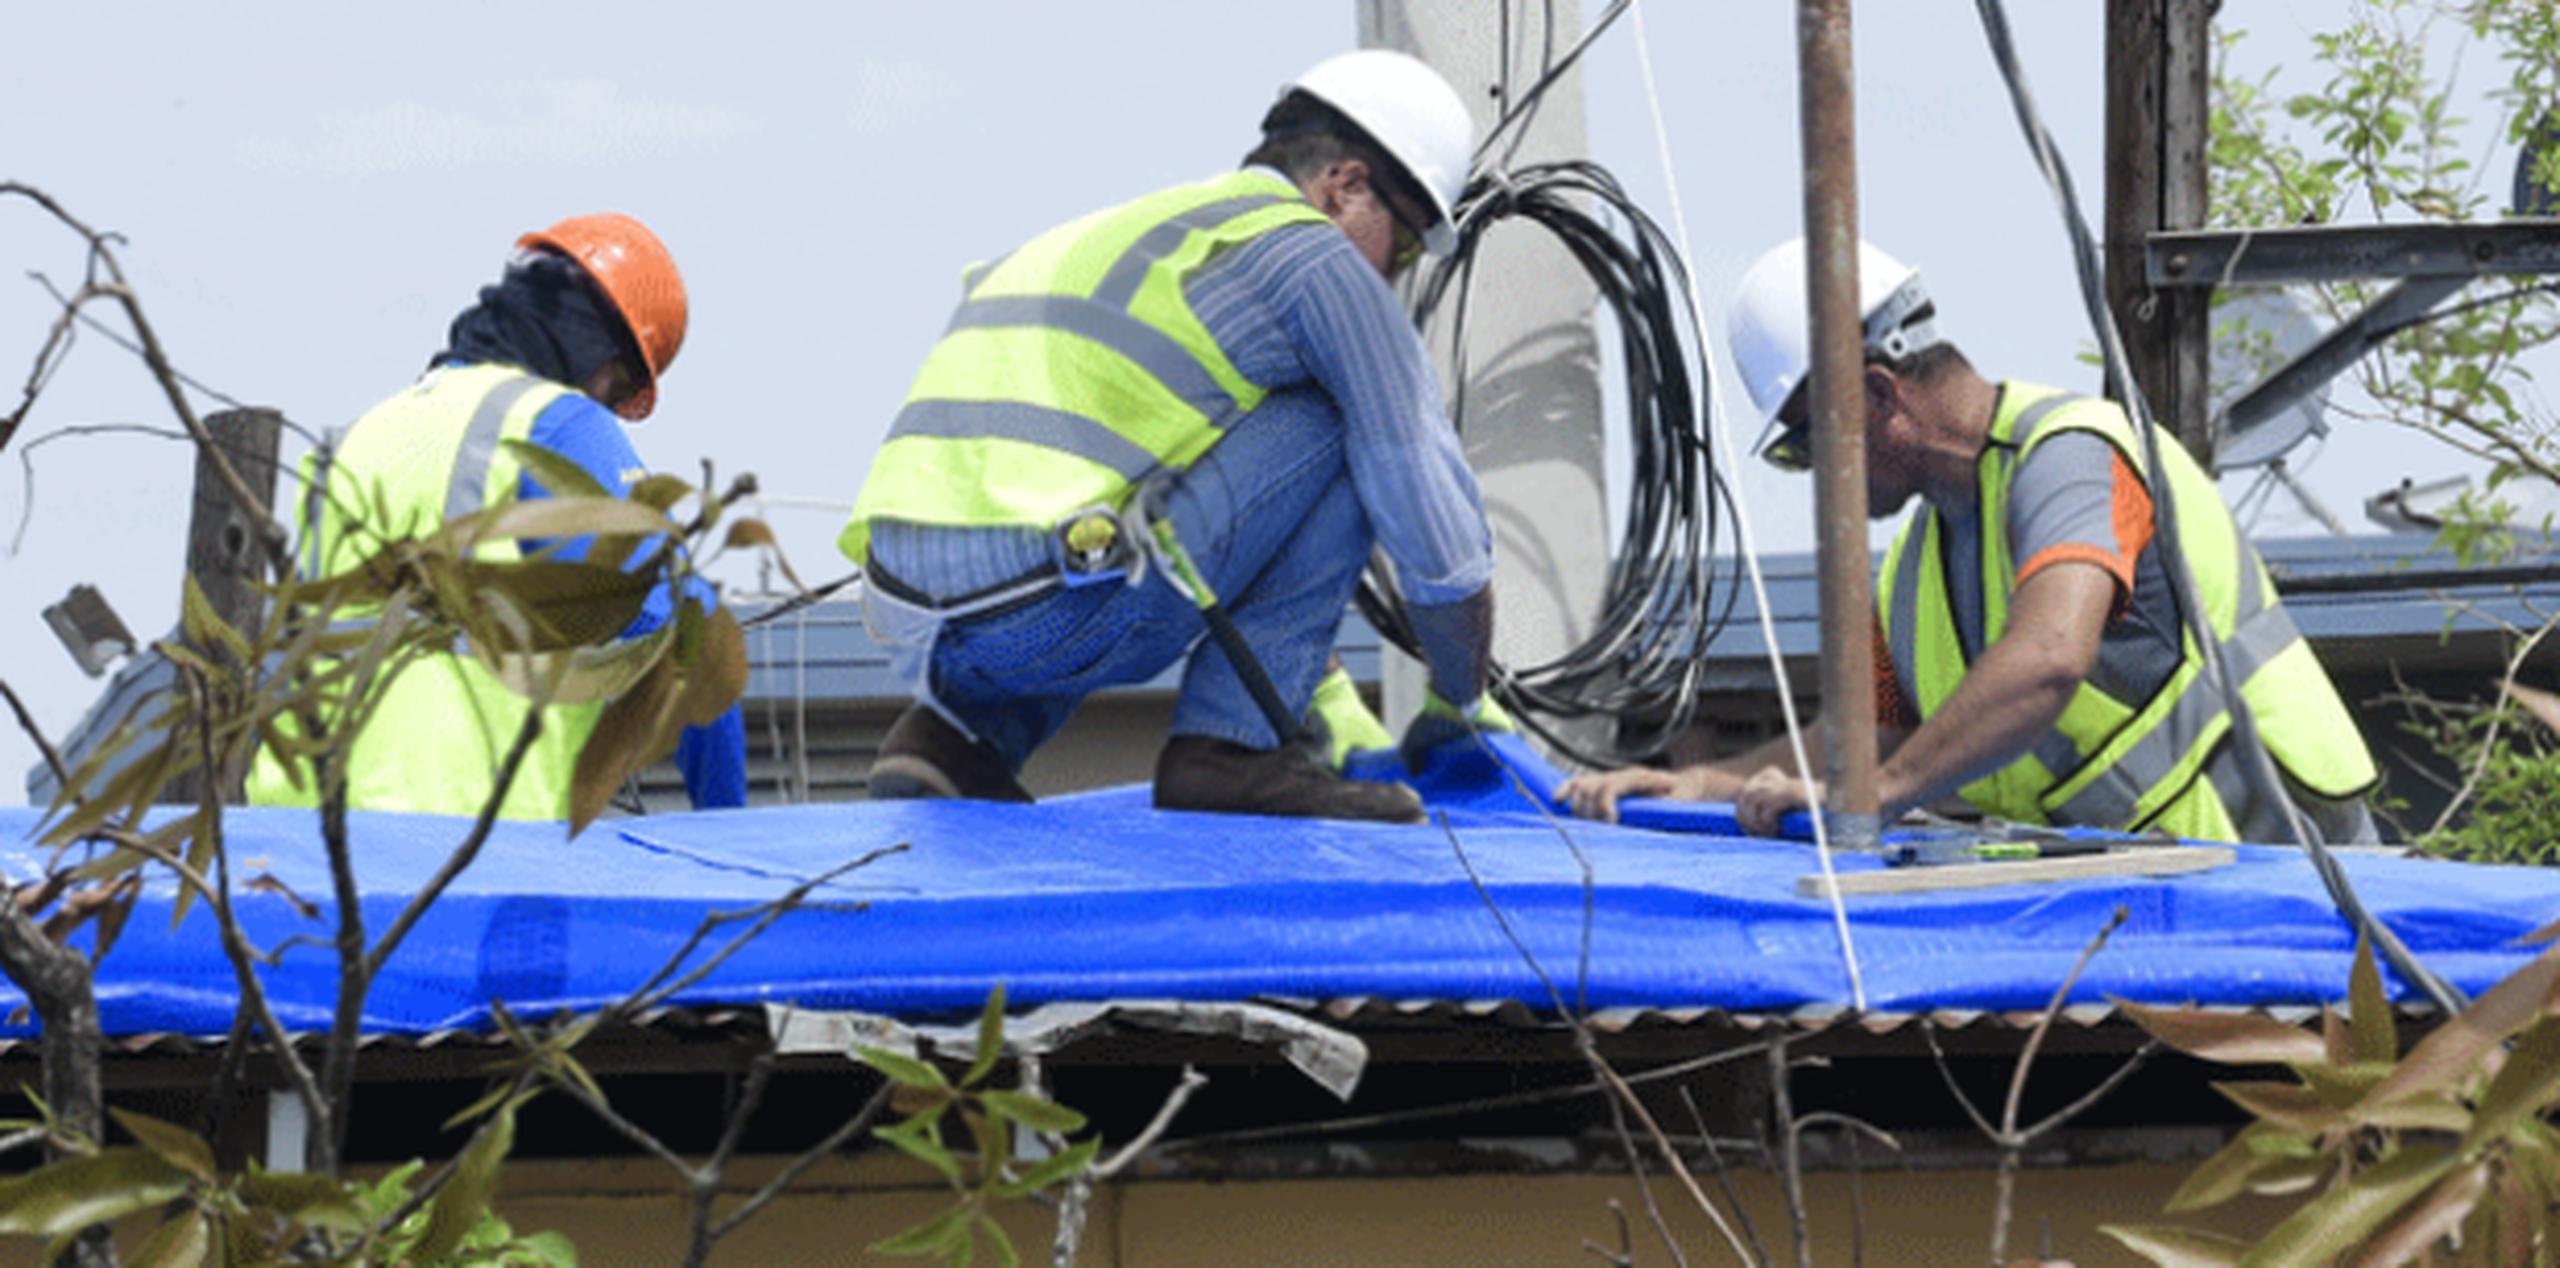 Decenas de empleados de compañías privadas manipulan los extensos rollos de plástico azul brillante que servirán de techo para cientos de familias del país. (gerald.lopez@gfrmedia.com)